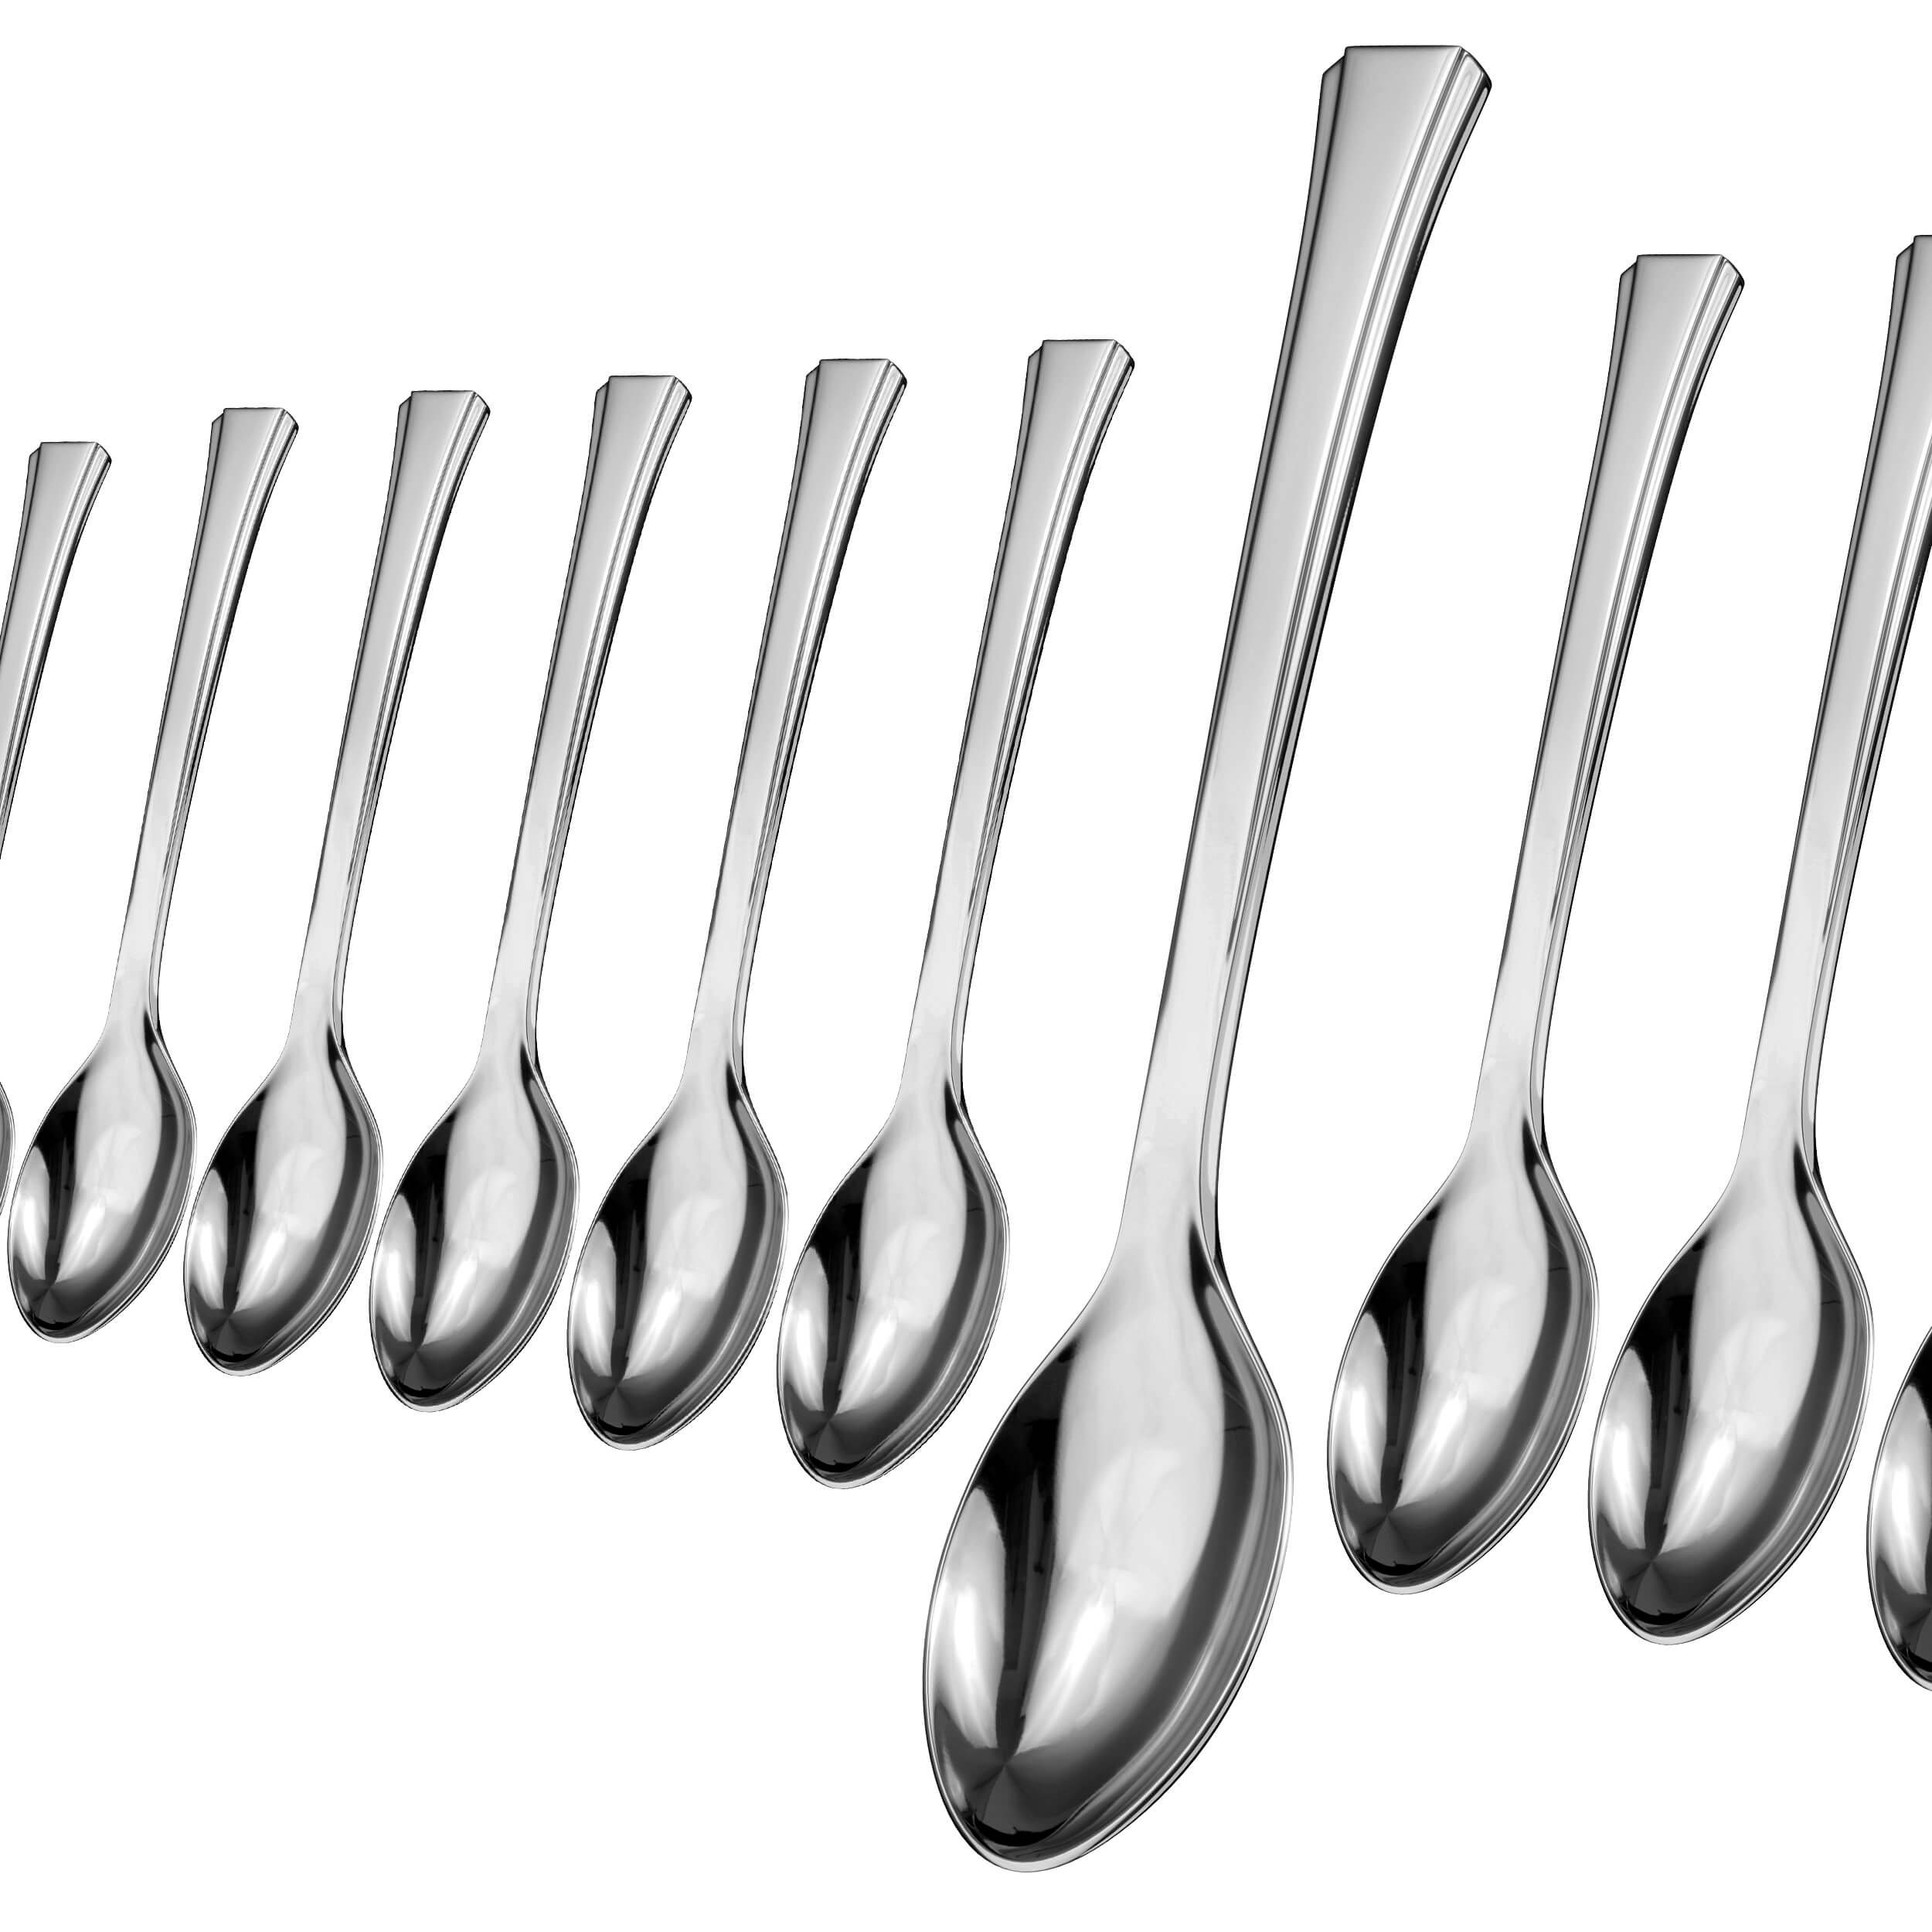 Exquisite Silver Plastic Tea Spoons | 20 Count